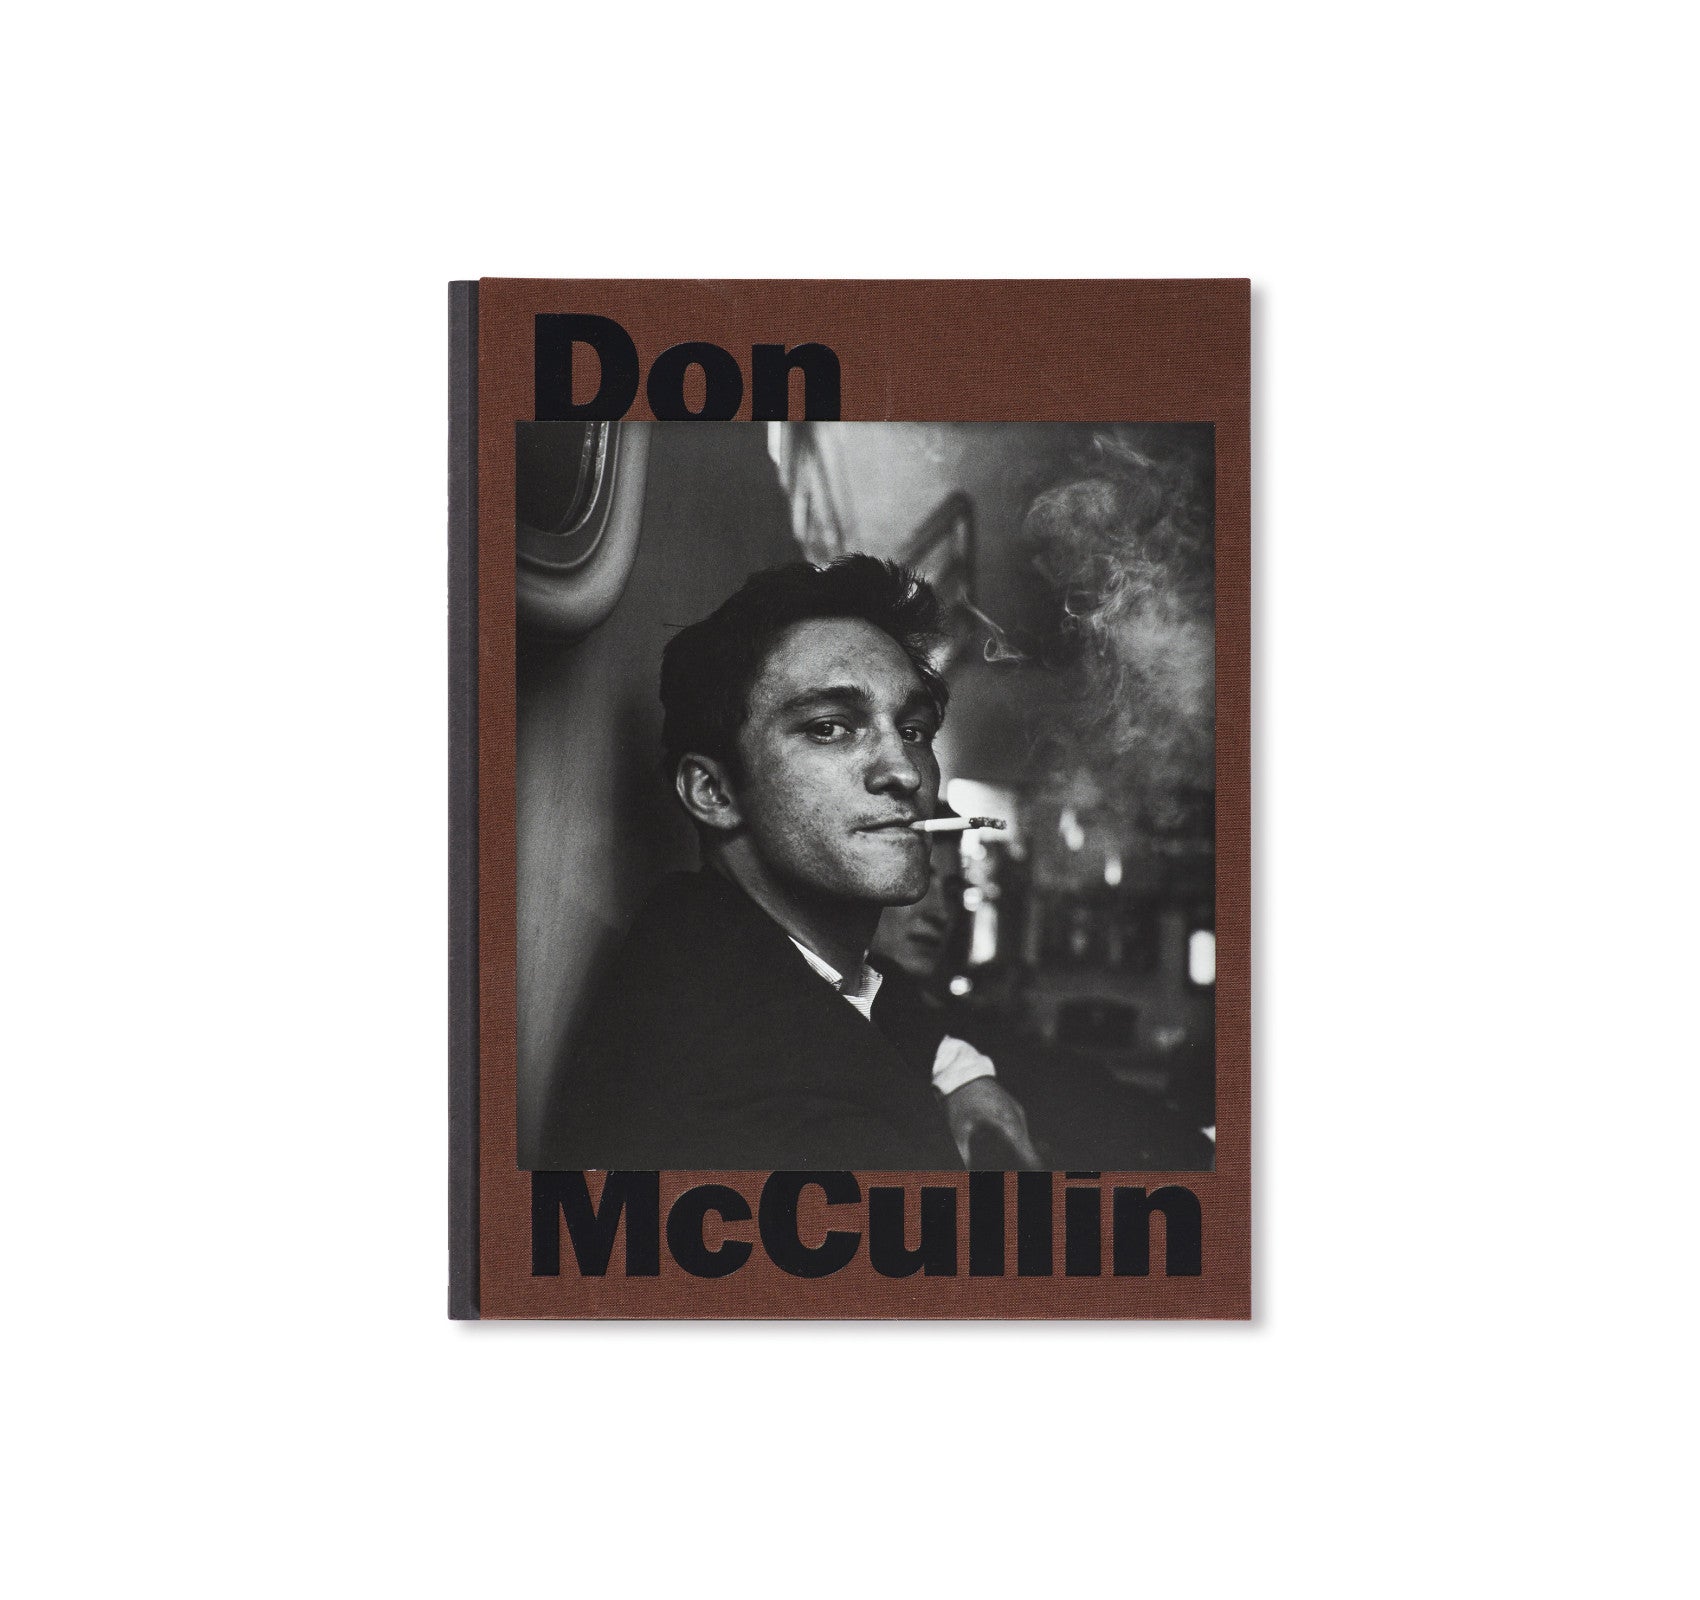 DON MCCULLIN by Don McCullin